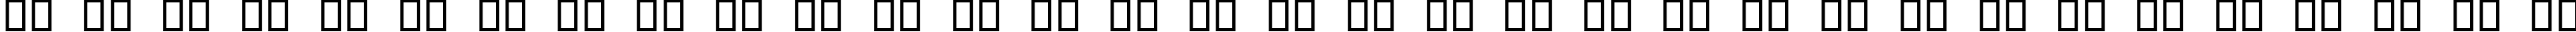 Пример написания русского алфавита шрифтом Bearpaw Bats